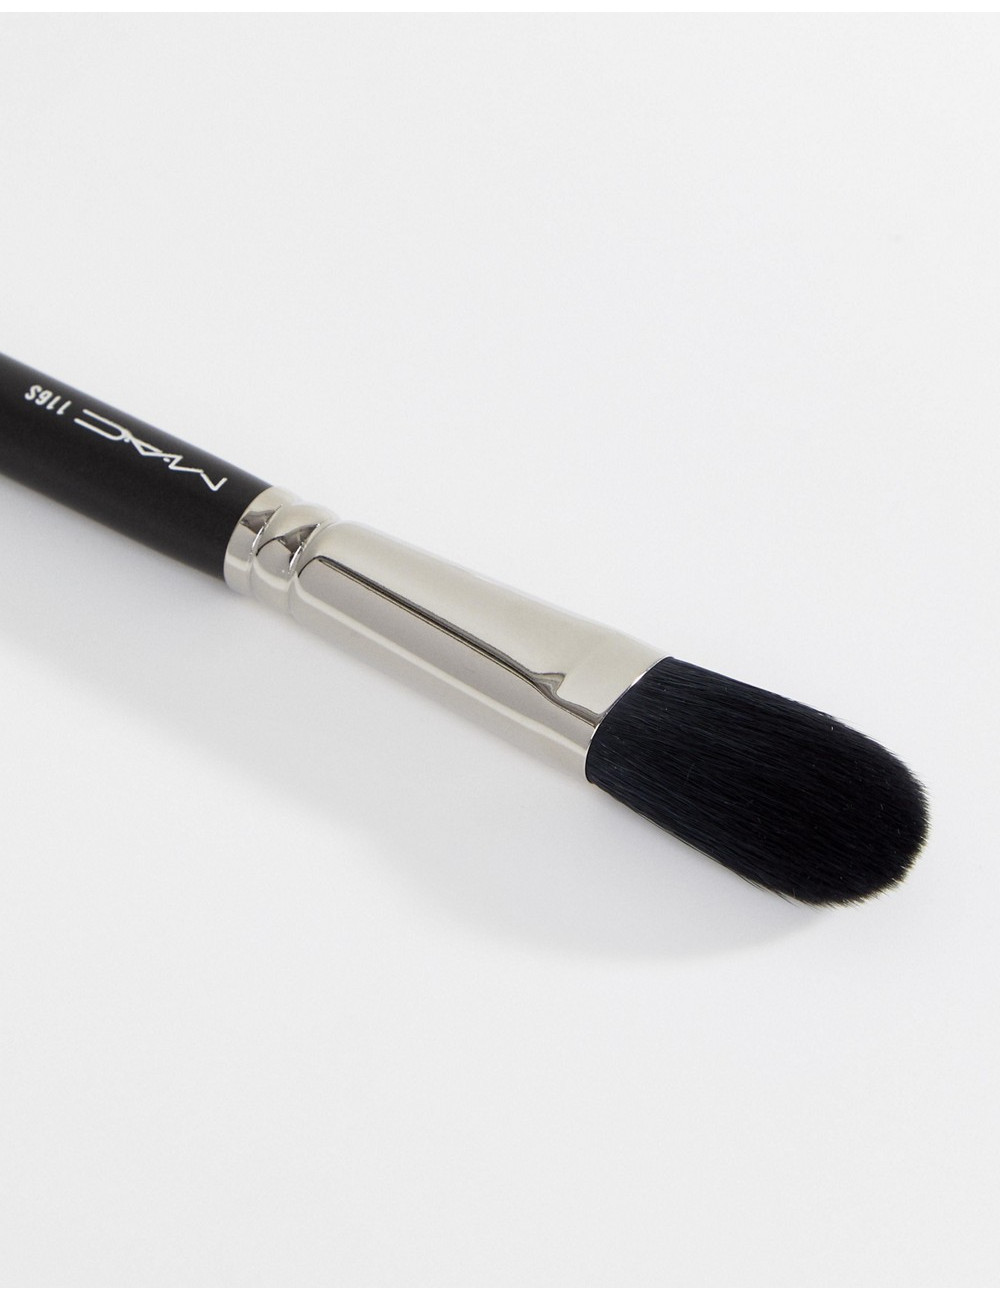 MAC 116S Blush Brush